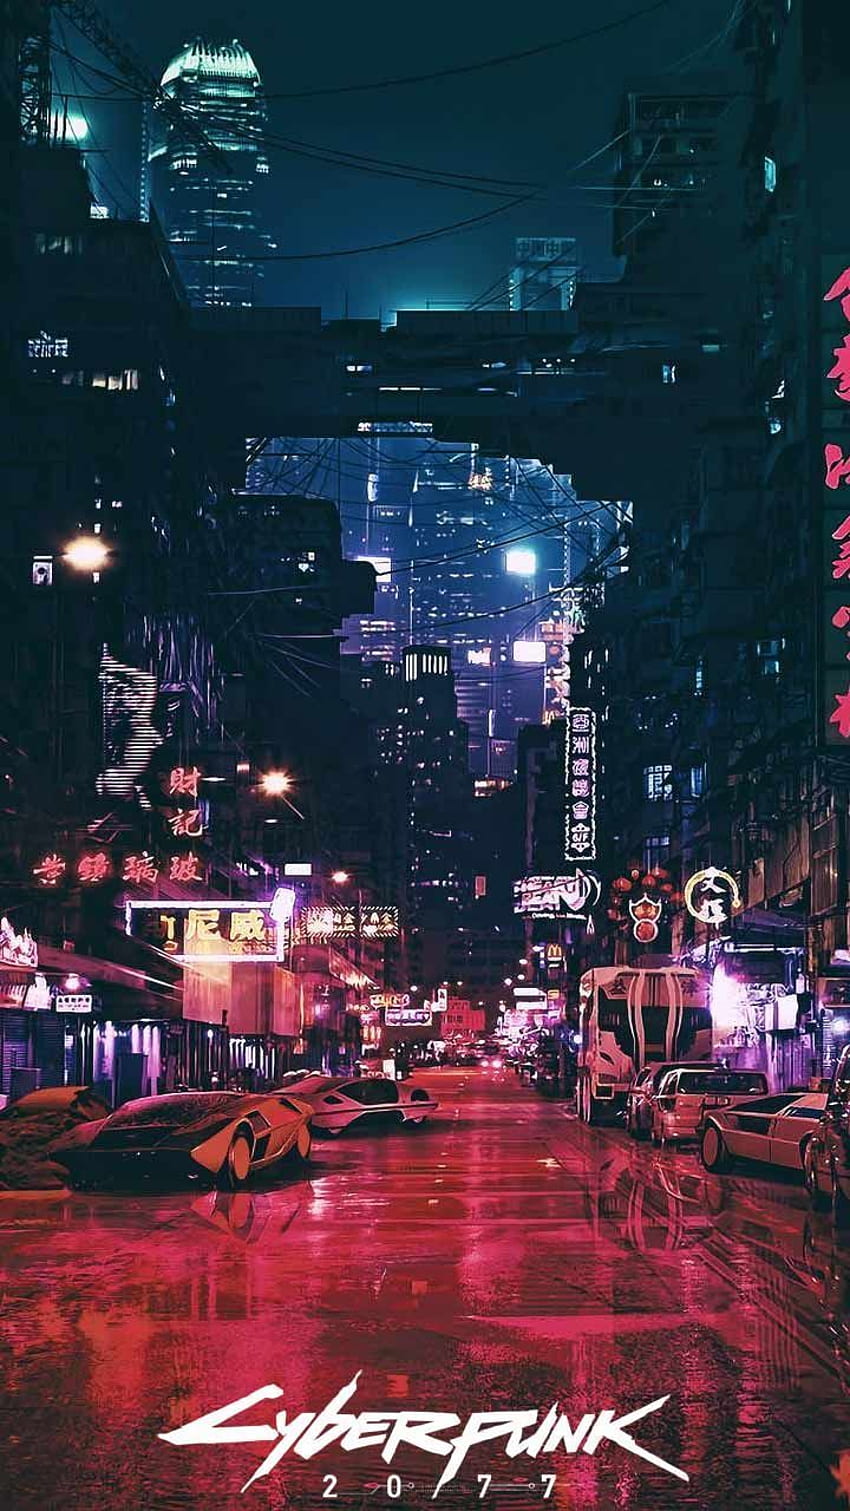 de teléfono Cyberpunk 2077 Póster de arte del logotipo del juego de la ciudad nocturna en iPhone Android. Ciudad, Arte pop, Ciudad futurista, Cool Cyberpunk fondo de pantalla del teléfono